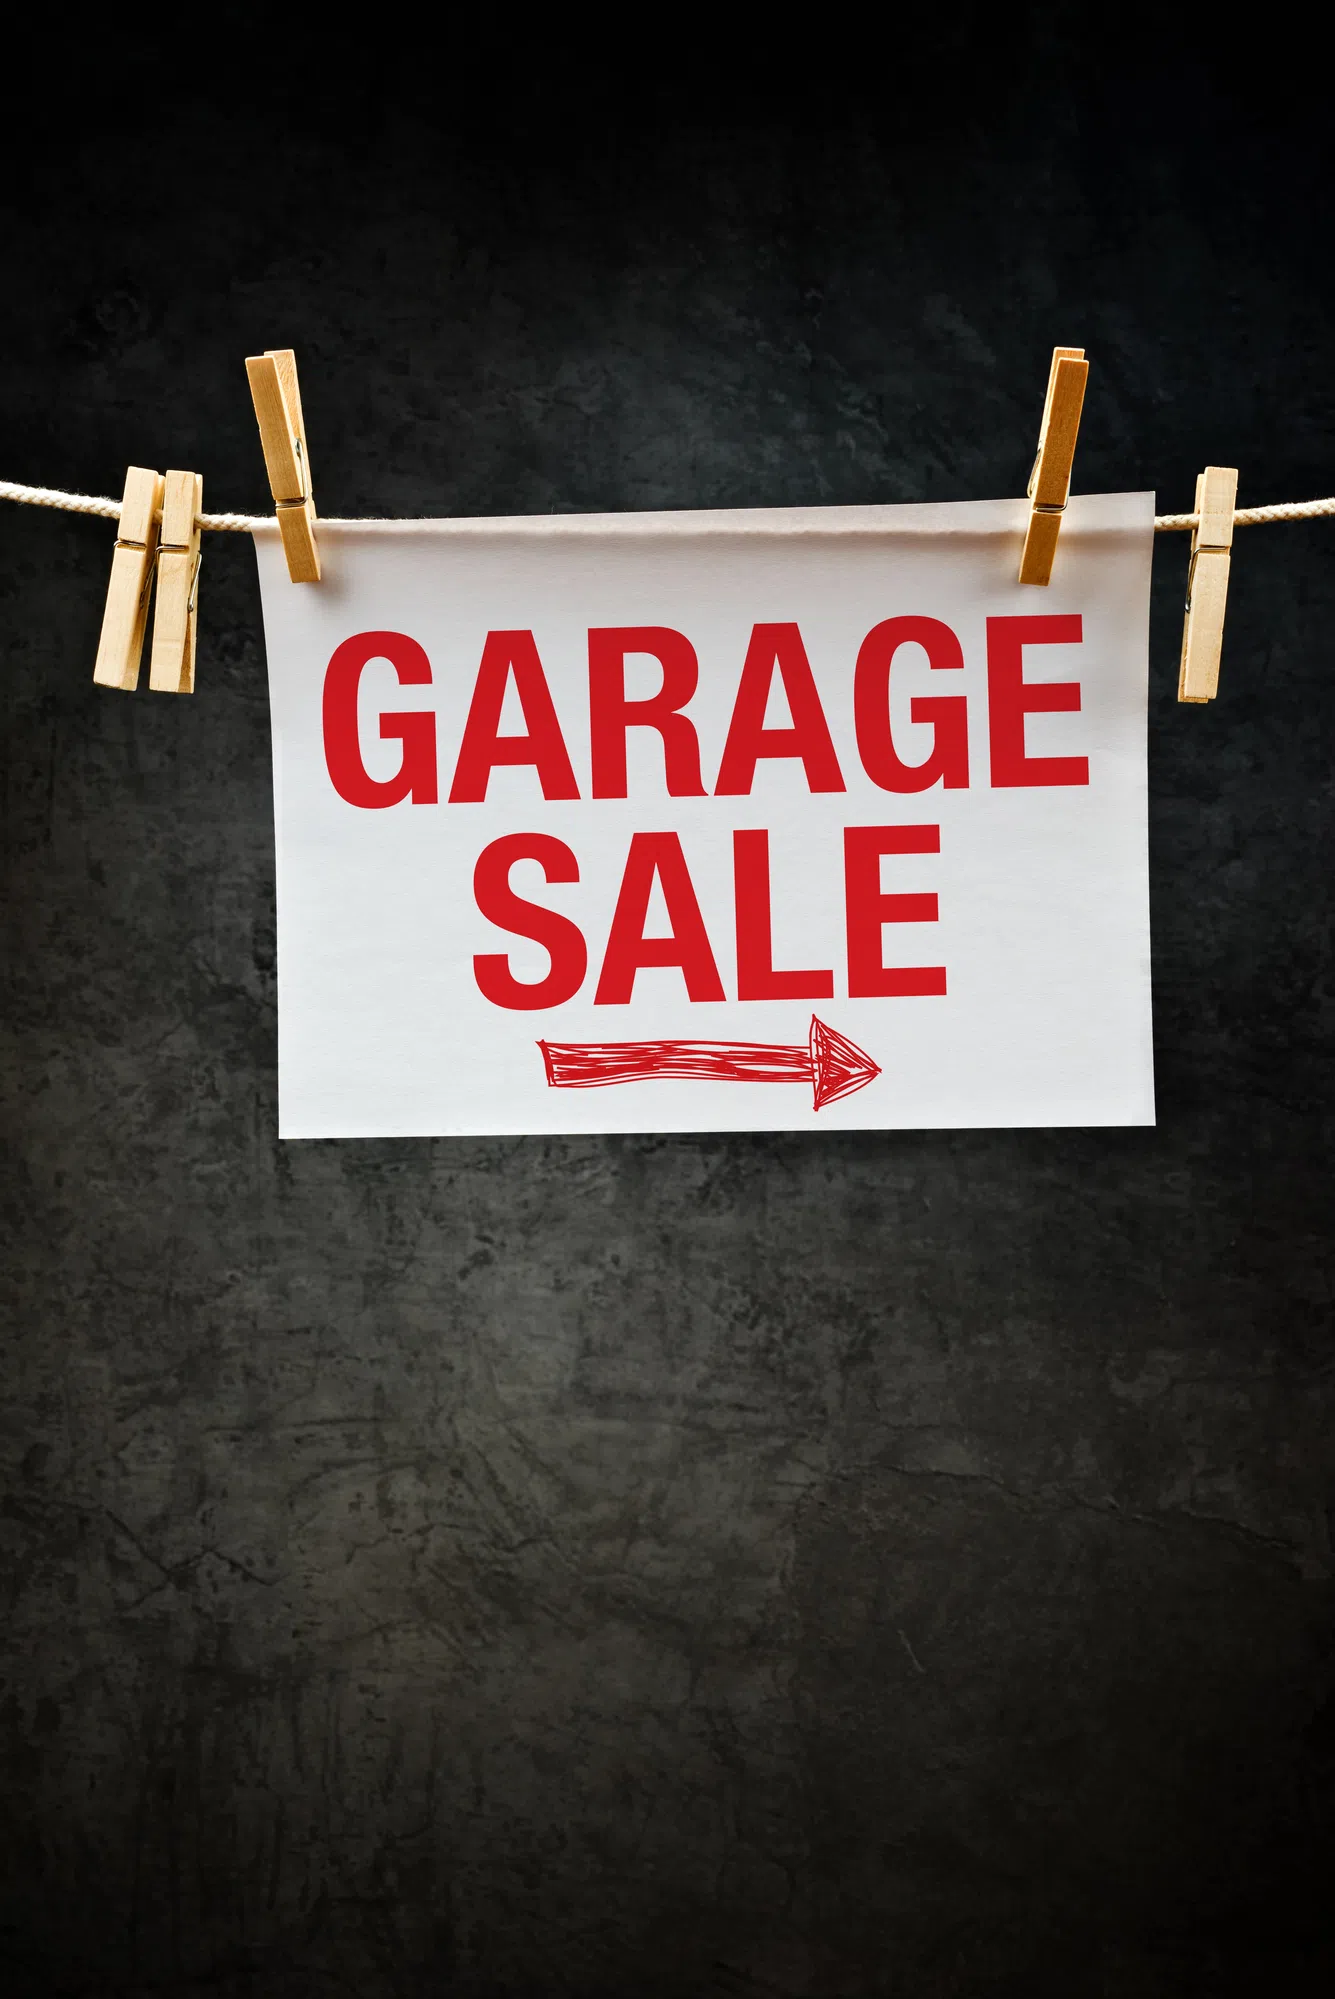 Registration For Bradford Town-Wide Garage Sale Begins